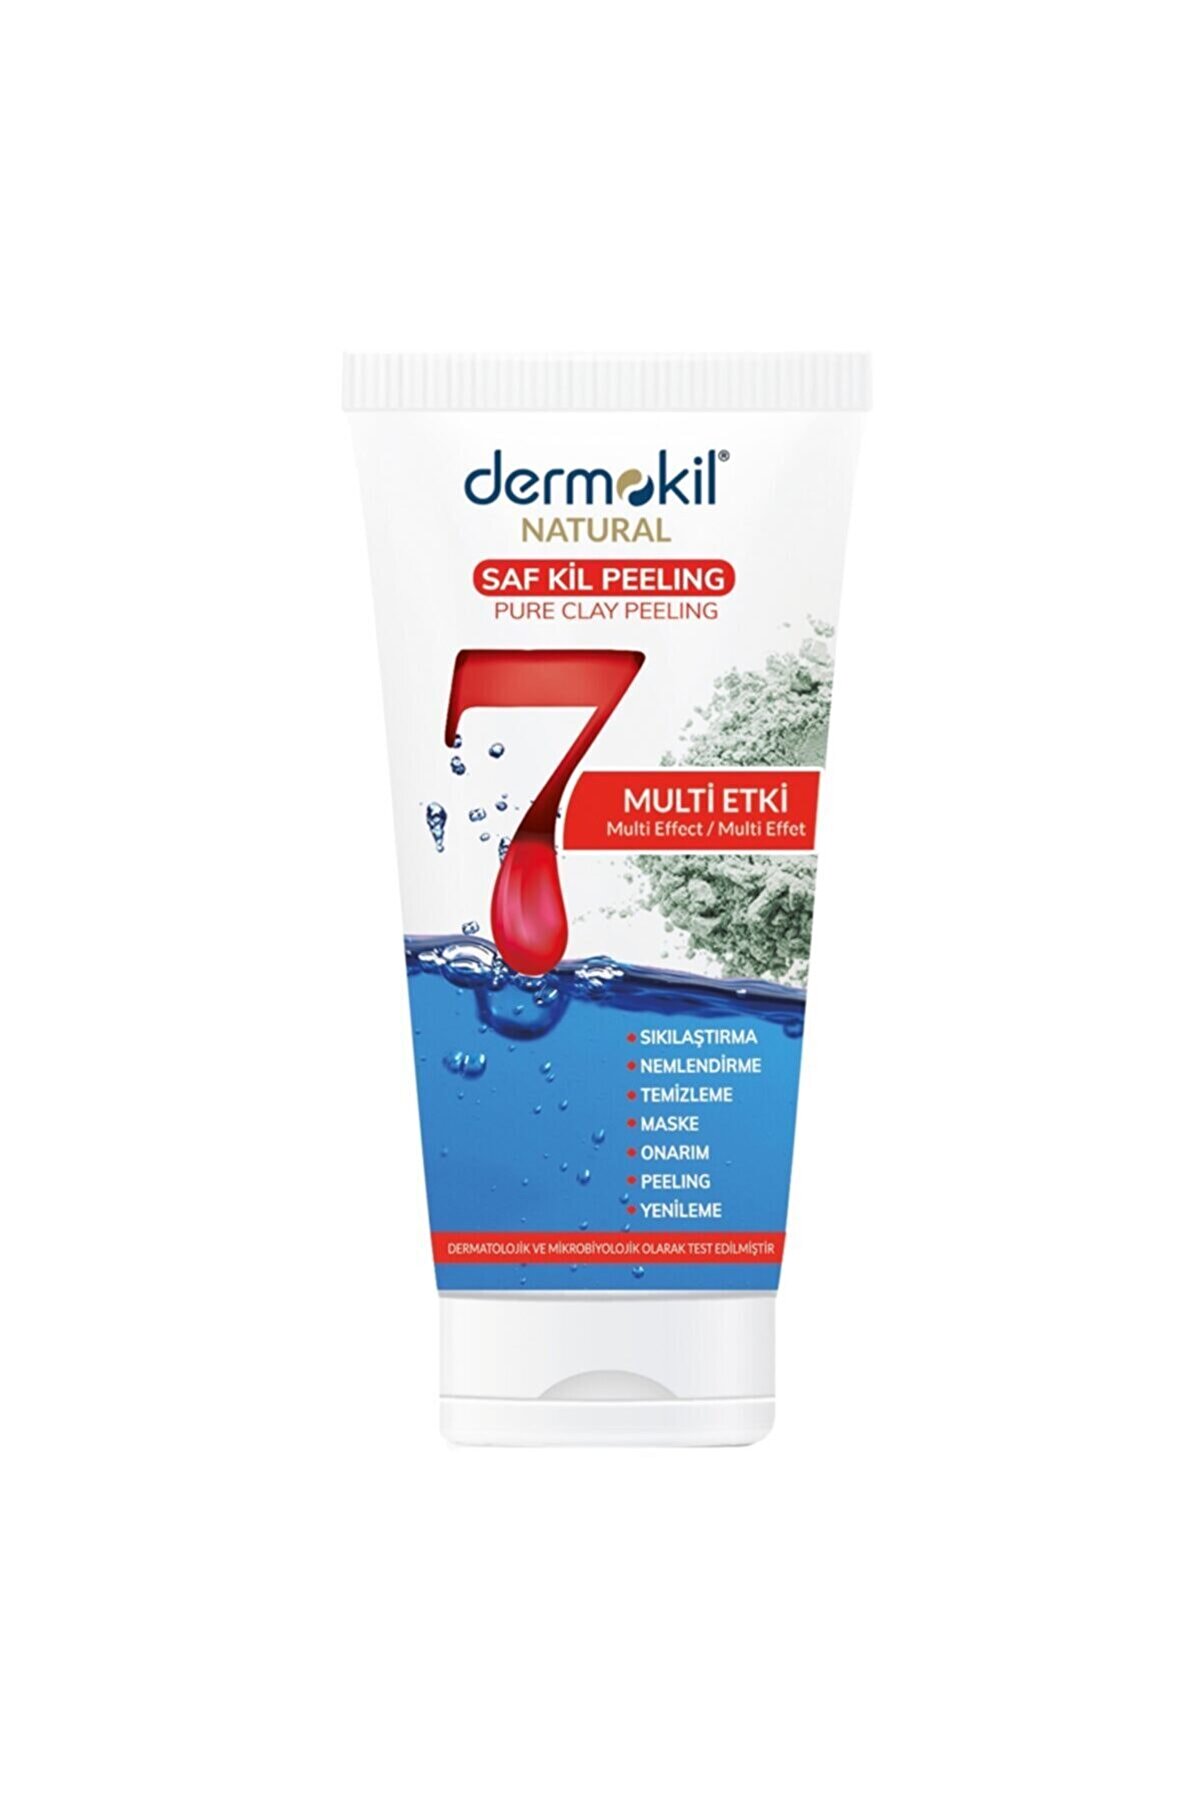 Dermokil Natural Skin 7 Etkili Günlük Cilt Bakım Kürü 150 ml